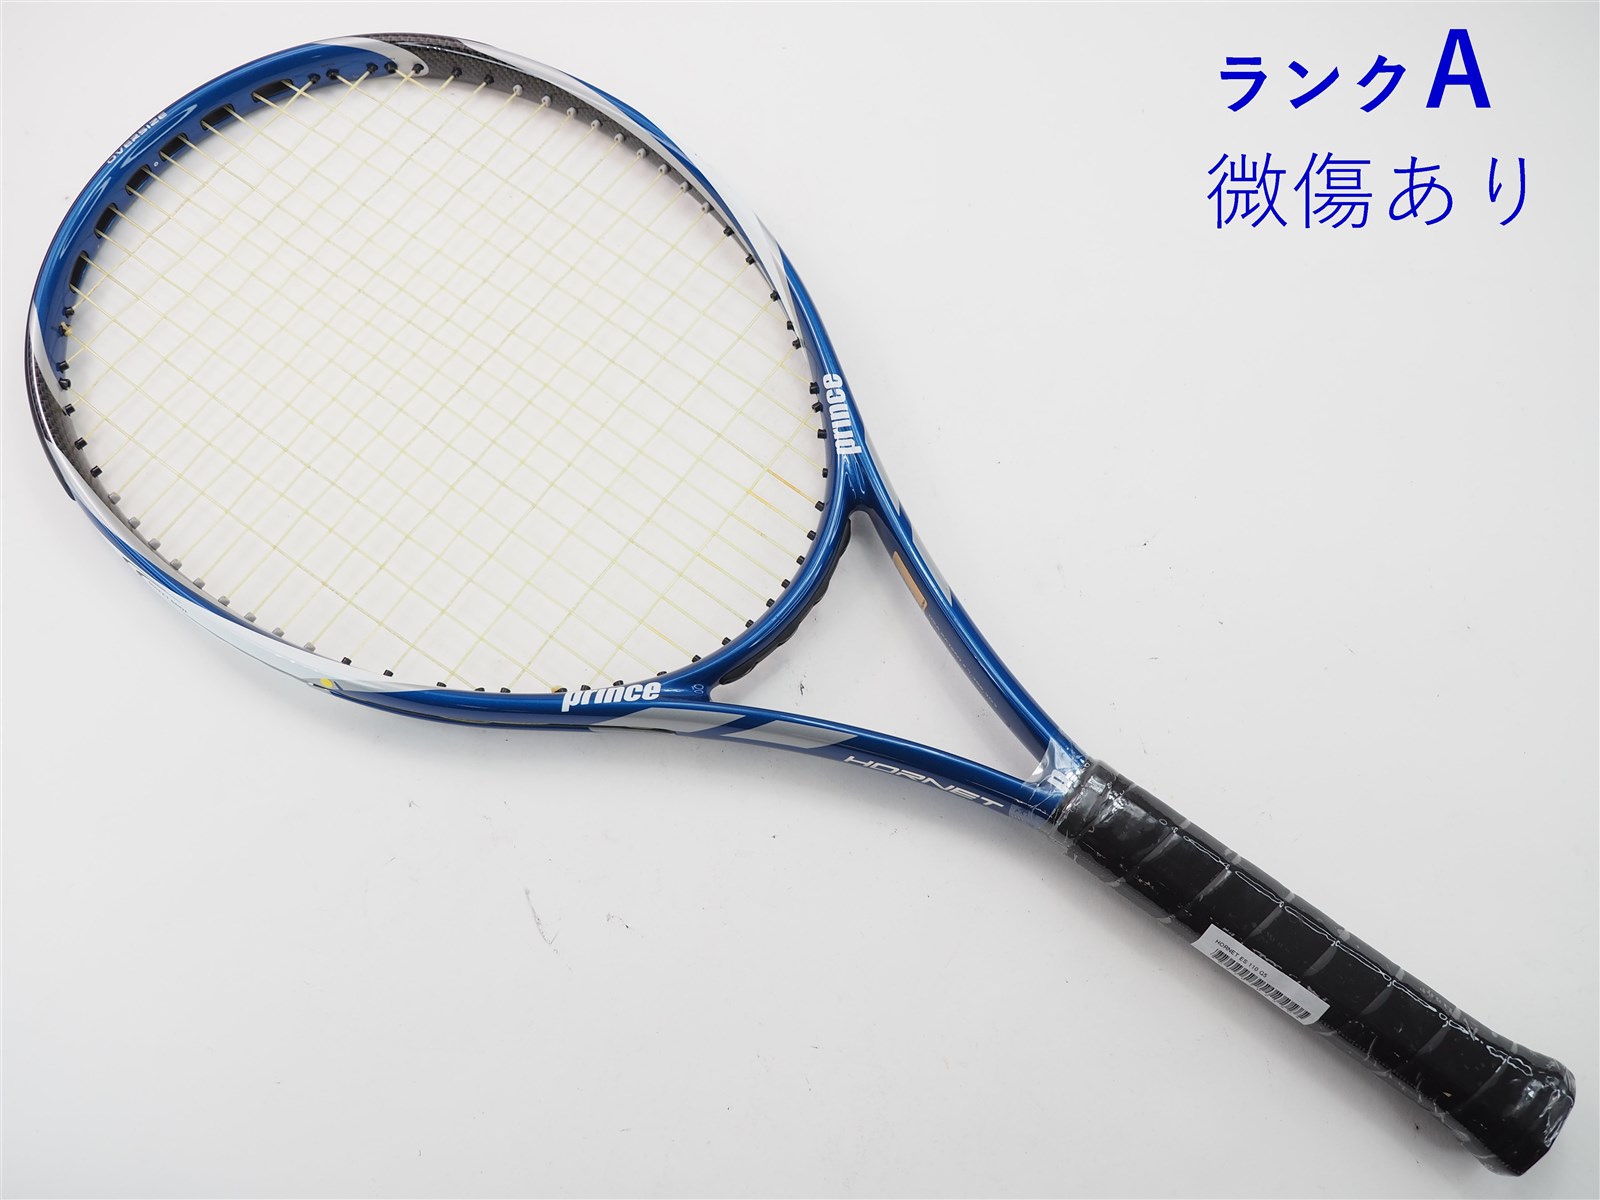 テニスラケット プリンス ホーネット ES 110 (G5)PRINCE HORNET ES 110